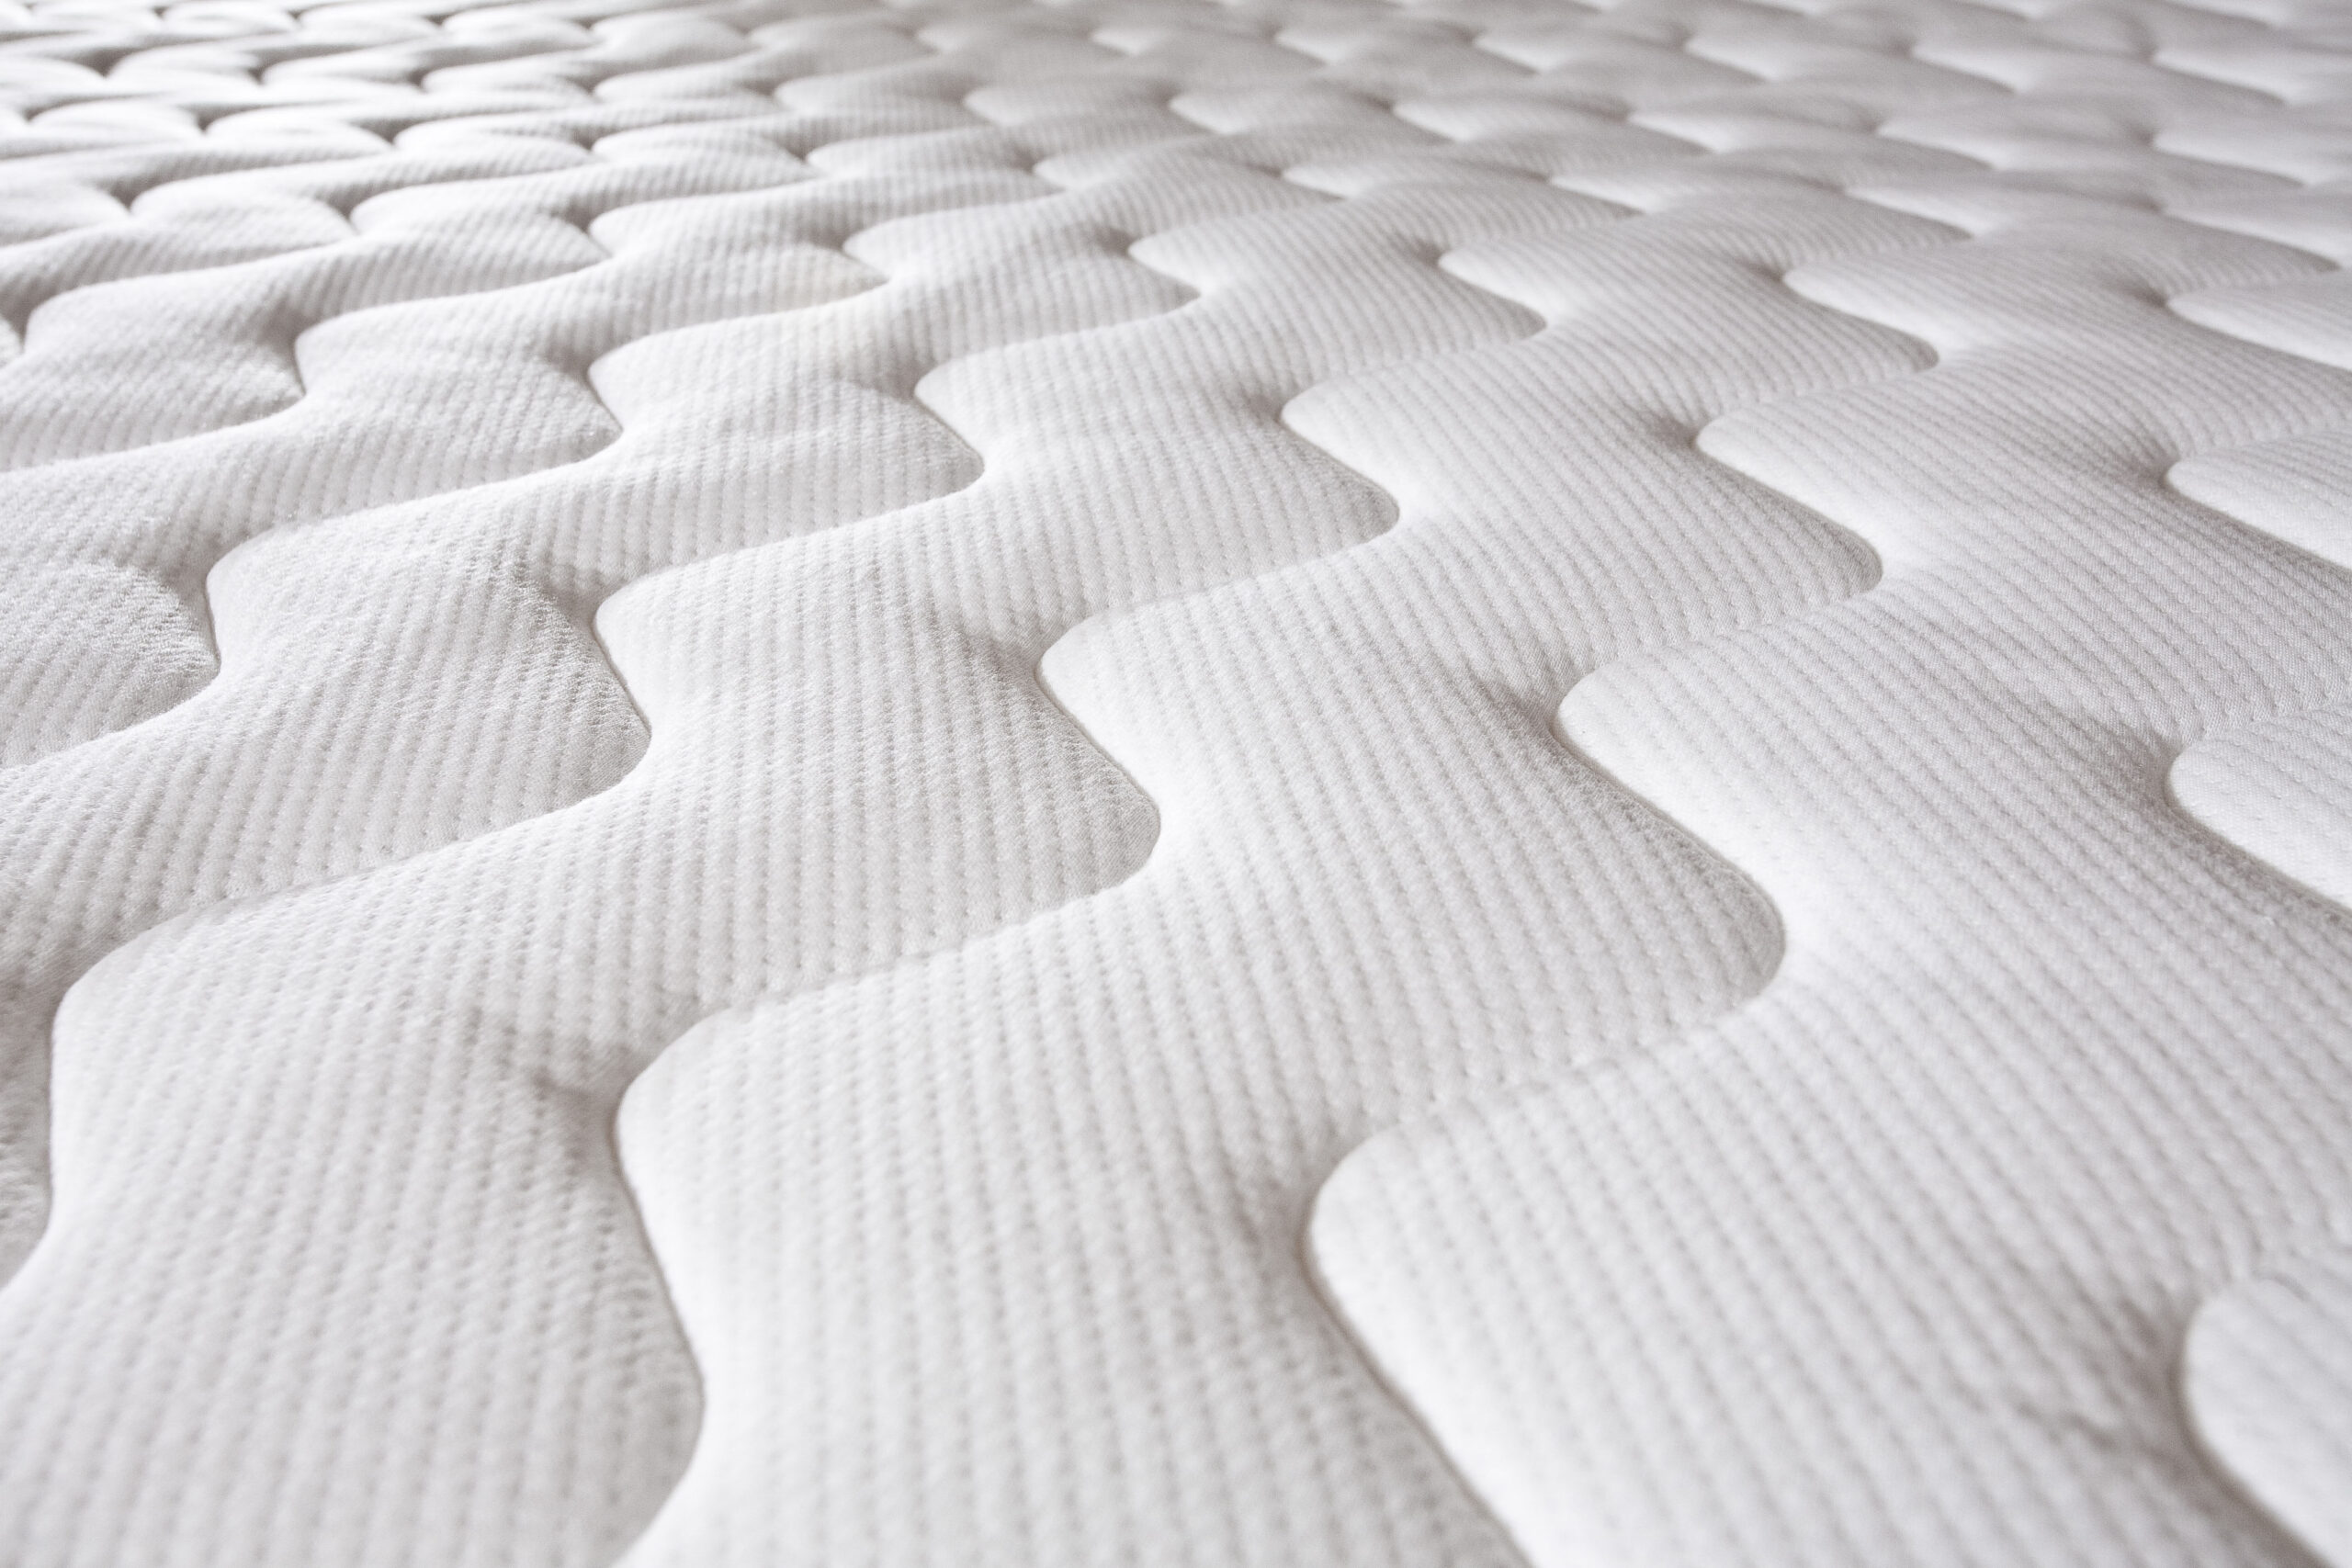 high-end mattress